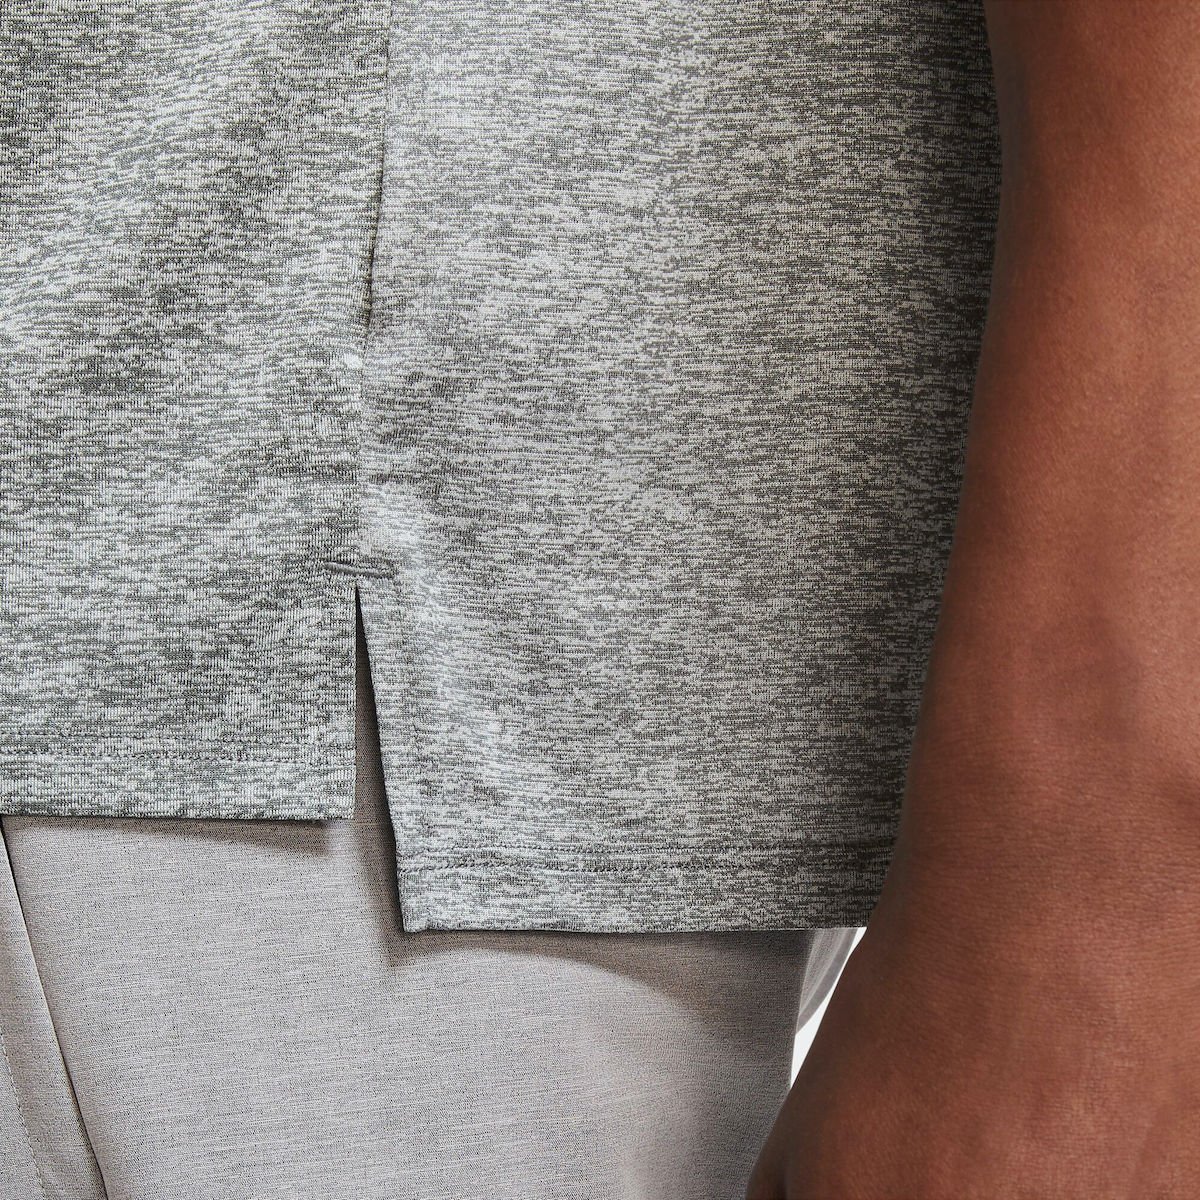 Tričko Nike Dri-Fit Rise 365 M - šedá